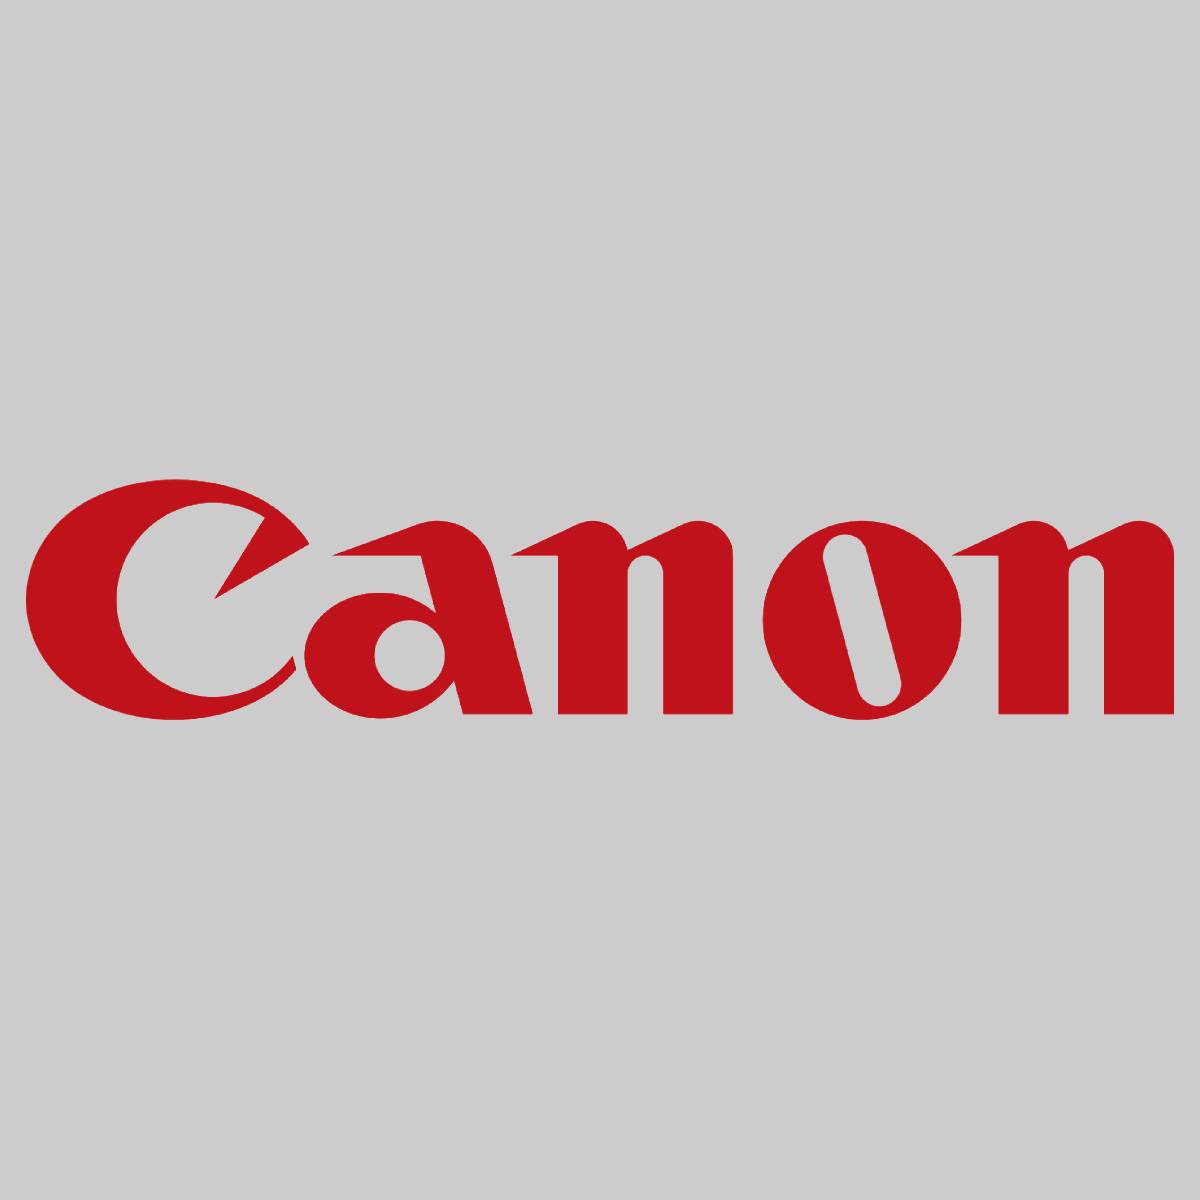 "Original Canon Cleaning Brush Roller FC5-9156-000 für imagePRESS C6000 C7000